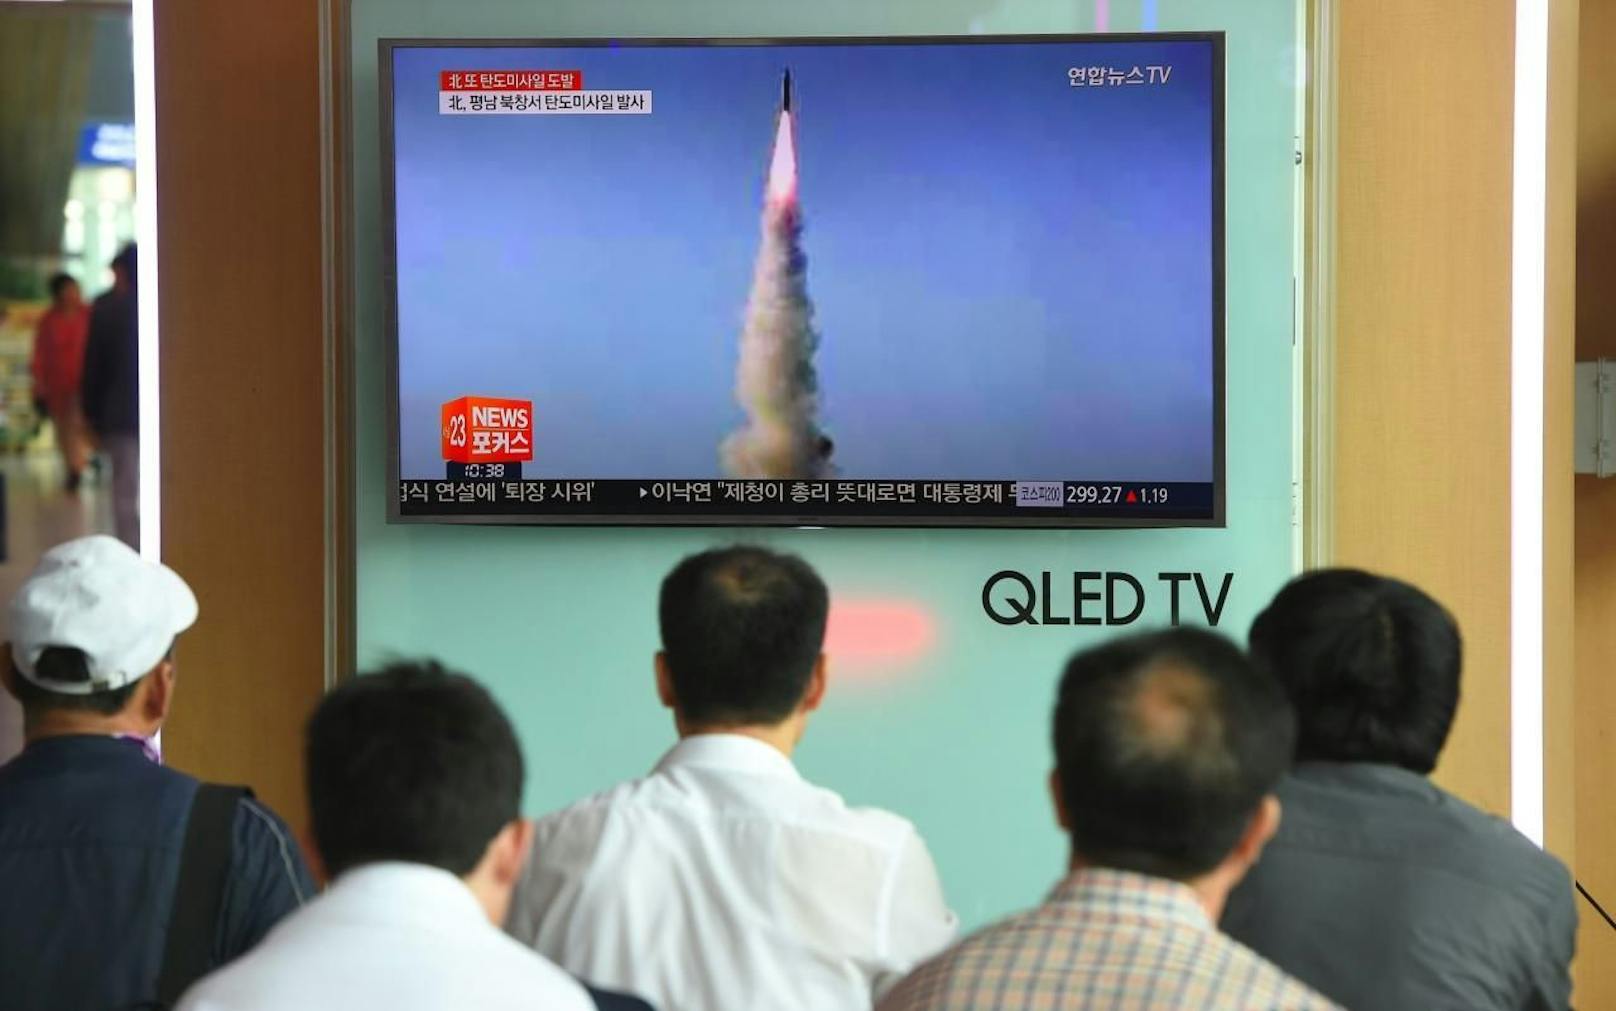 Nordkorea testete erneut eine Mittelstreckenraktete.